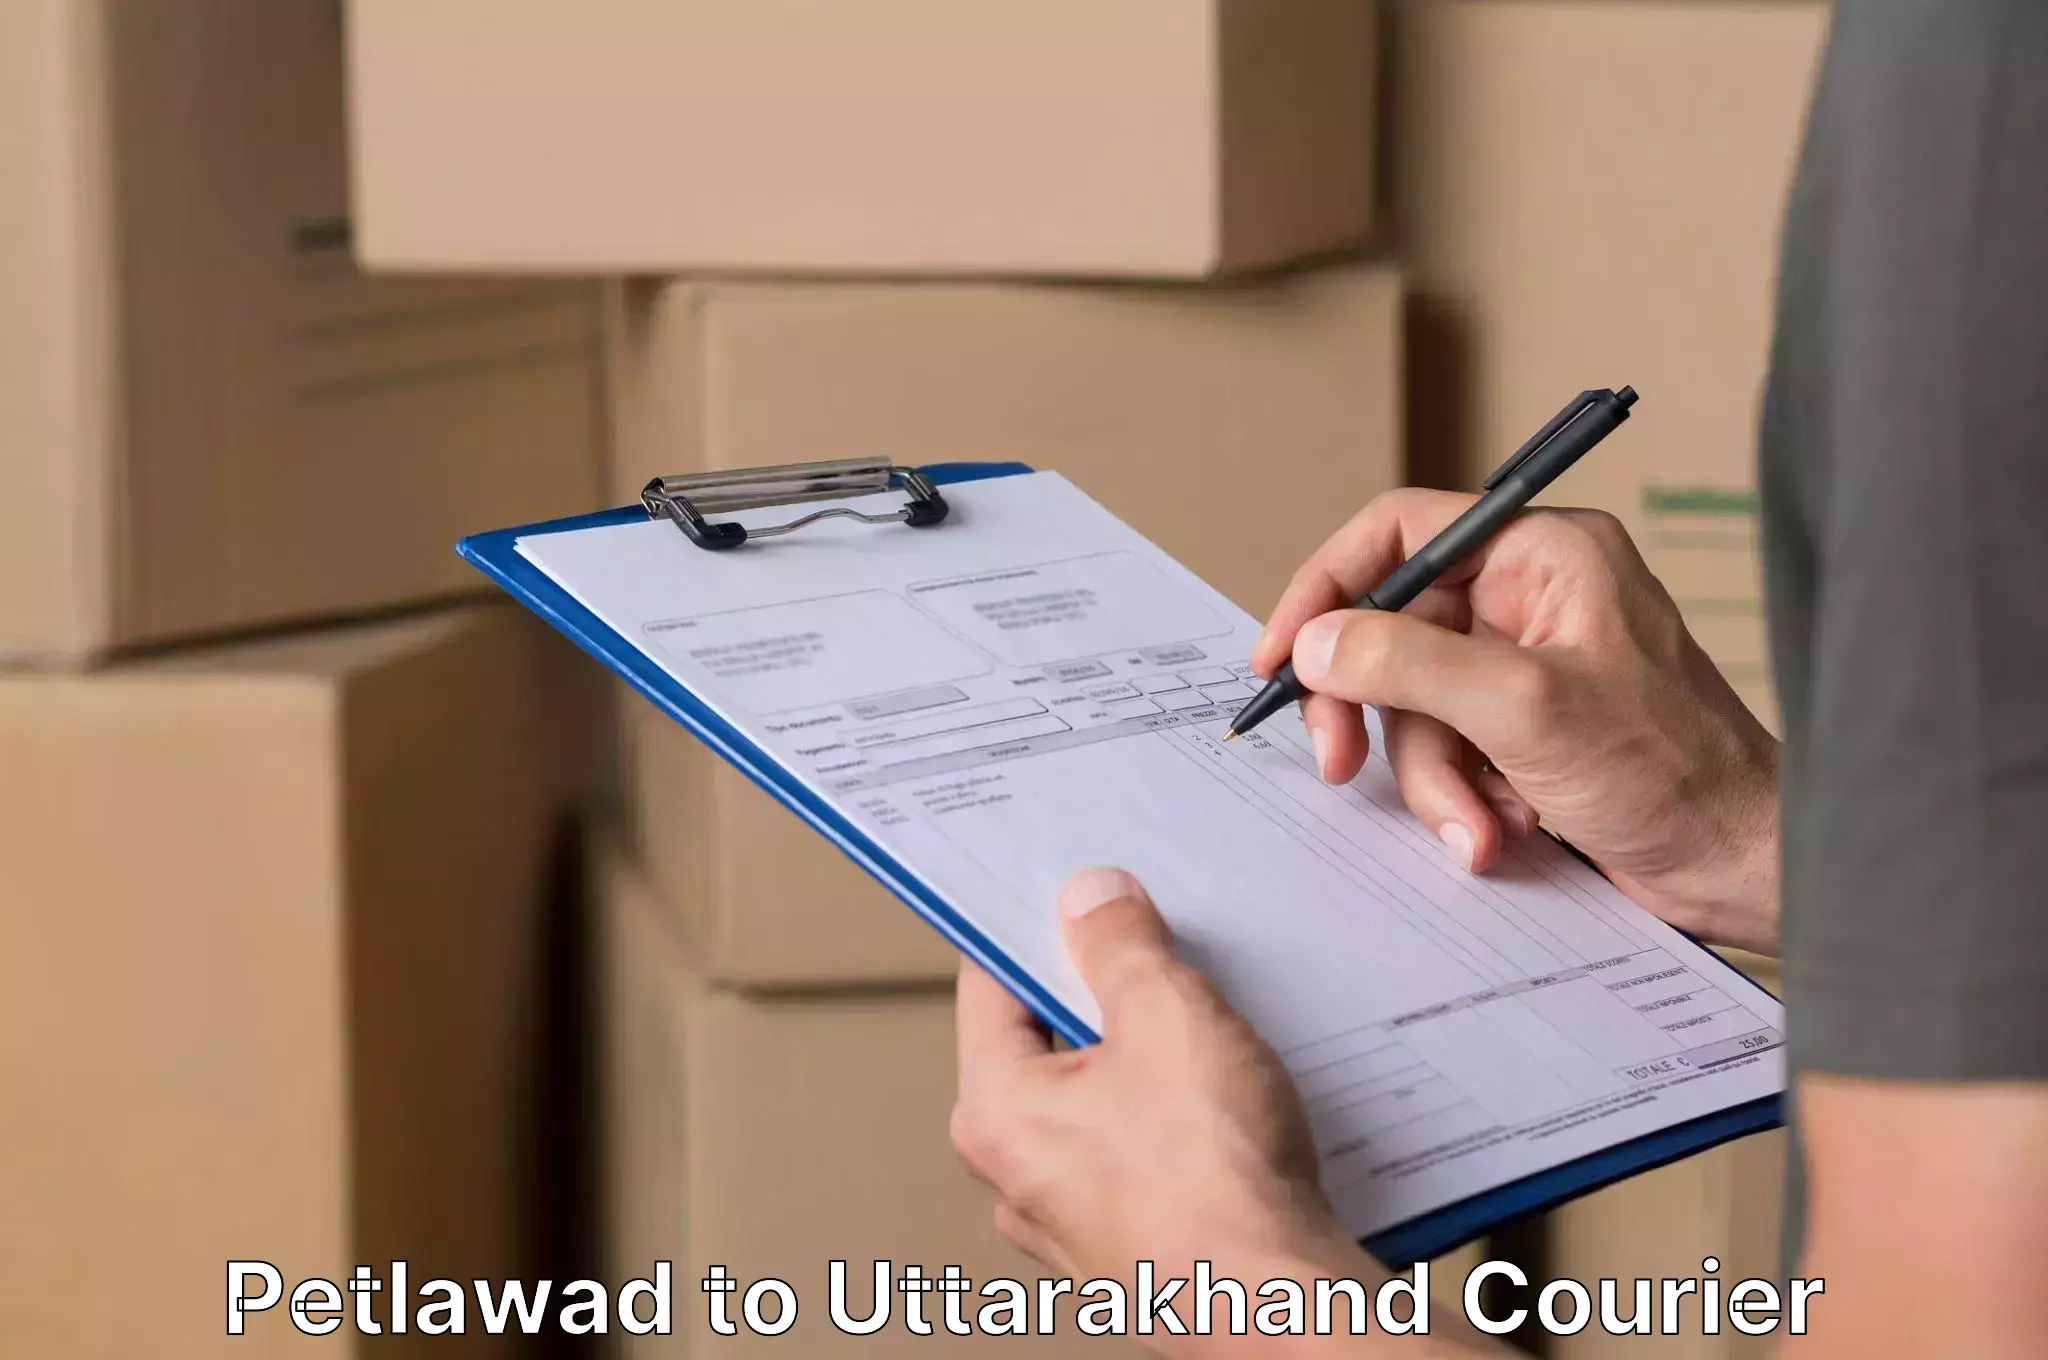 Furniture transport specialists Petlawad to Uttarakhand